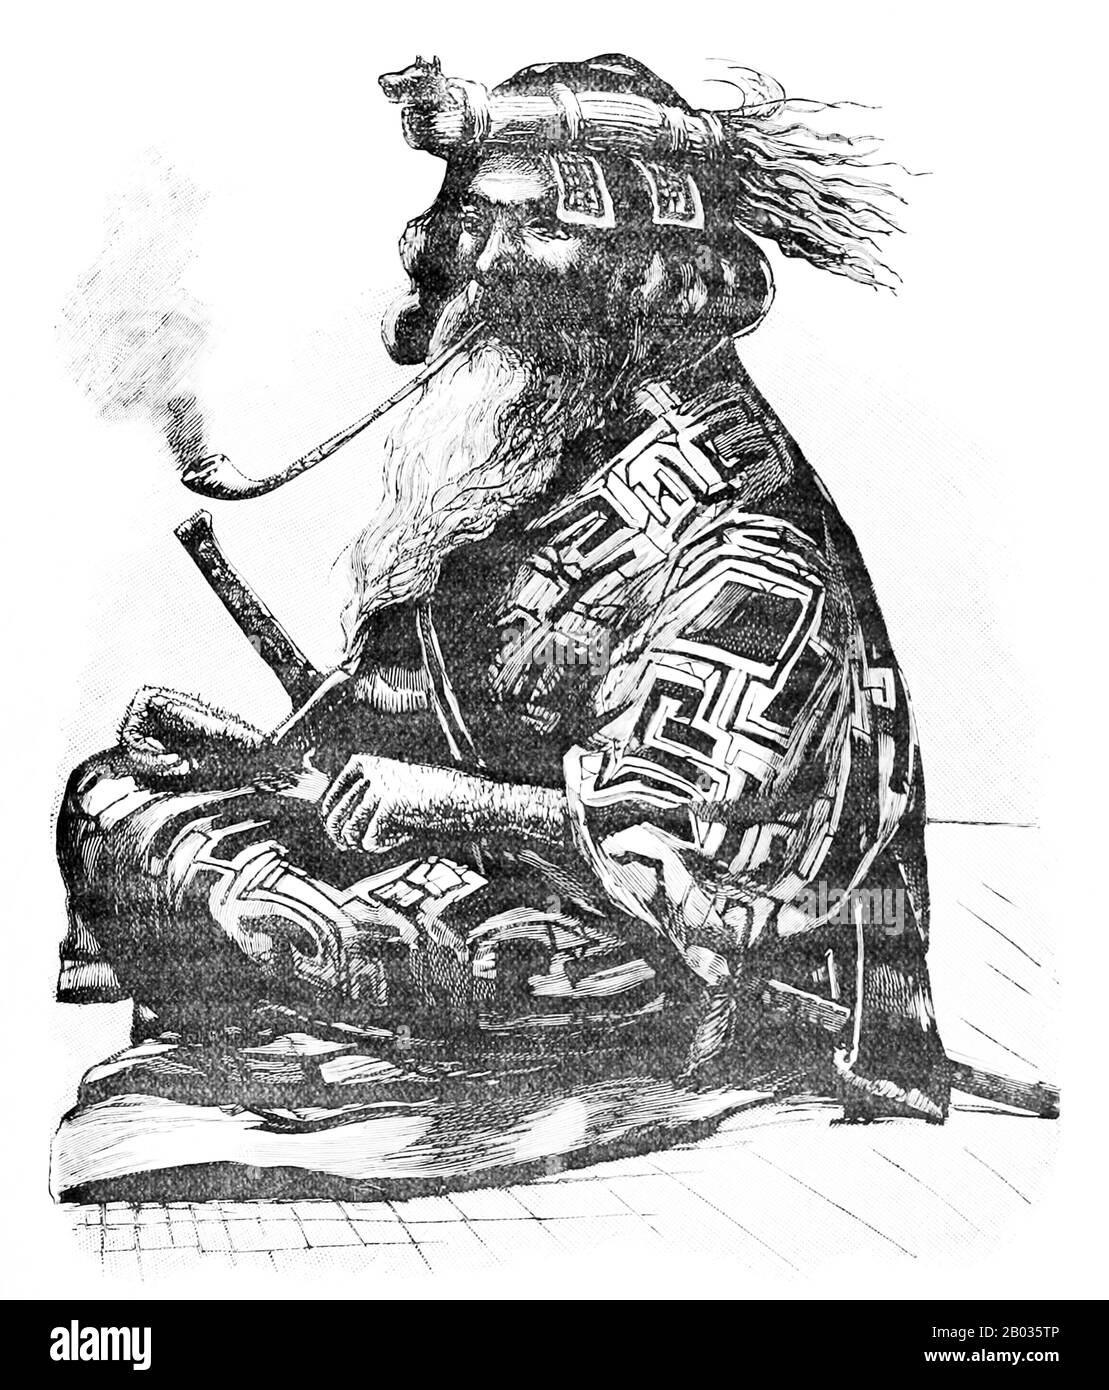 Die Ainu oder in historischen japanischen Texten Ezo, sind ein indigenes Volk Japans (Hokkaido, früher nordöstlicher Honshu) und Russlands (Sachalin und die Kurilinseln). Historisch sprachen sie die Ainu-Sprache und verwandte Varietäten und lebten in Hokkaidō, den Kurileninseln und einem Großteil von Sachalin. Die meisten, die sich als Ainu identifizieren, leben noch in derselben Region, obwohl die genaue Anzahl der lebenden Ainu unbekannt ist. Dies liegt an der Verwirrung über gemischte Heritagen und an ethnischen Problemen in Japan, die dazu führen, dass diejenigen mit Ainu-Hintergründen ihre Identitäten verstecken. In Japan wegen Interma Stockfoto